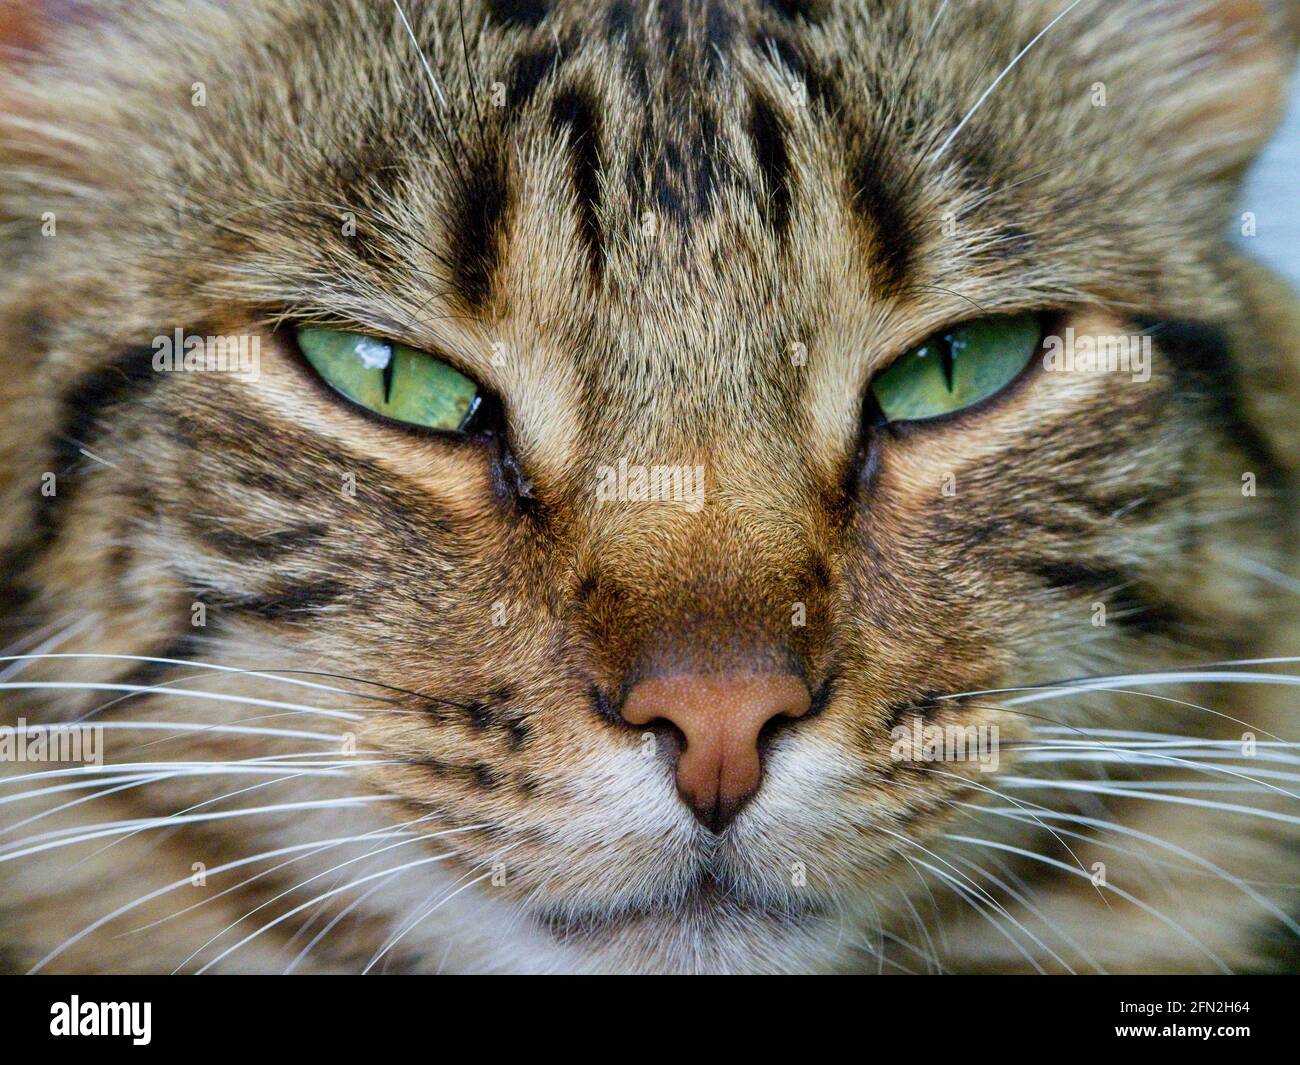 Gros plan portrait de chat tabby mignon avec des whiskers Equateur. Banque D'Images